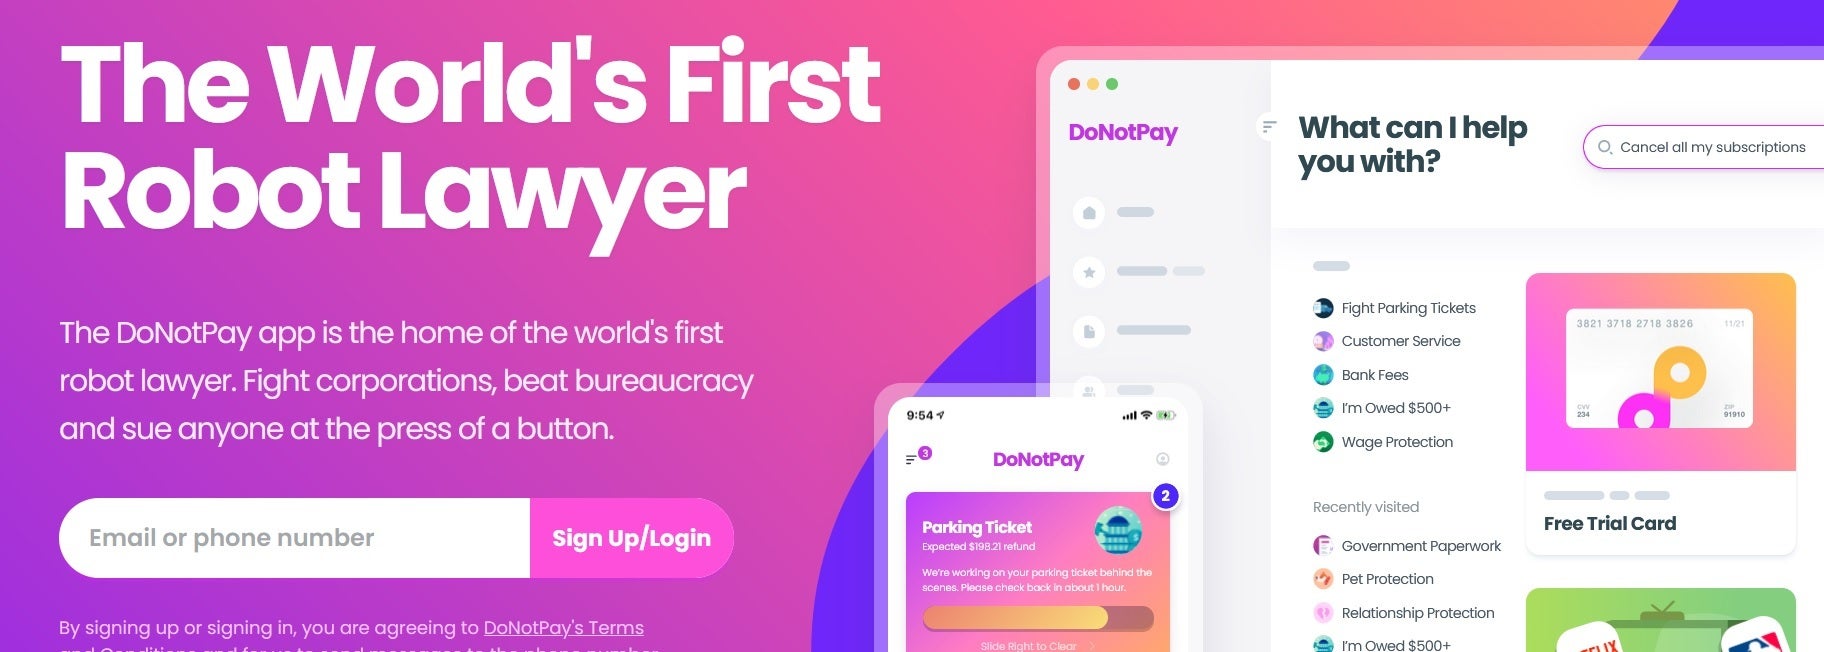 Situs web DoNotPay akan membantu Anda menangani tugas-tugas tertentu - aplikasi ponsel pintar bertenaga AI akan membantu mempertahankan yang lebih cepat di pengadilan bulan depan